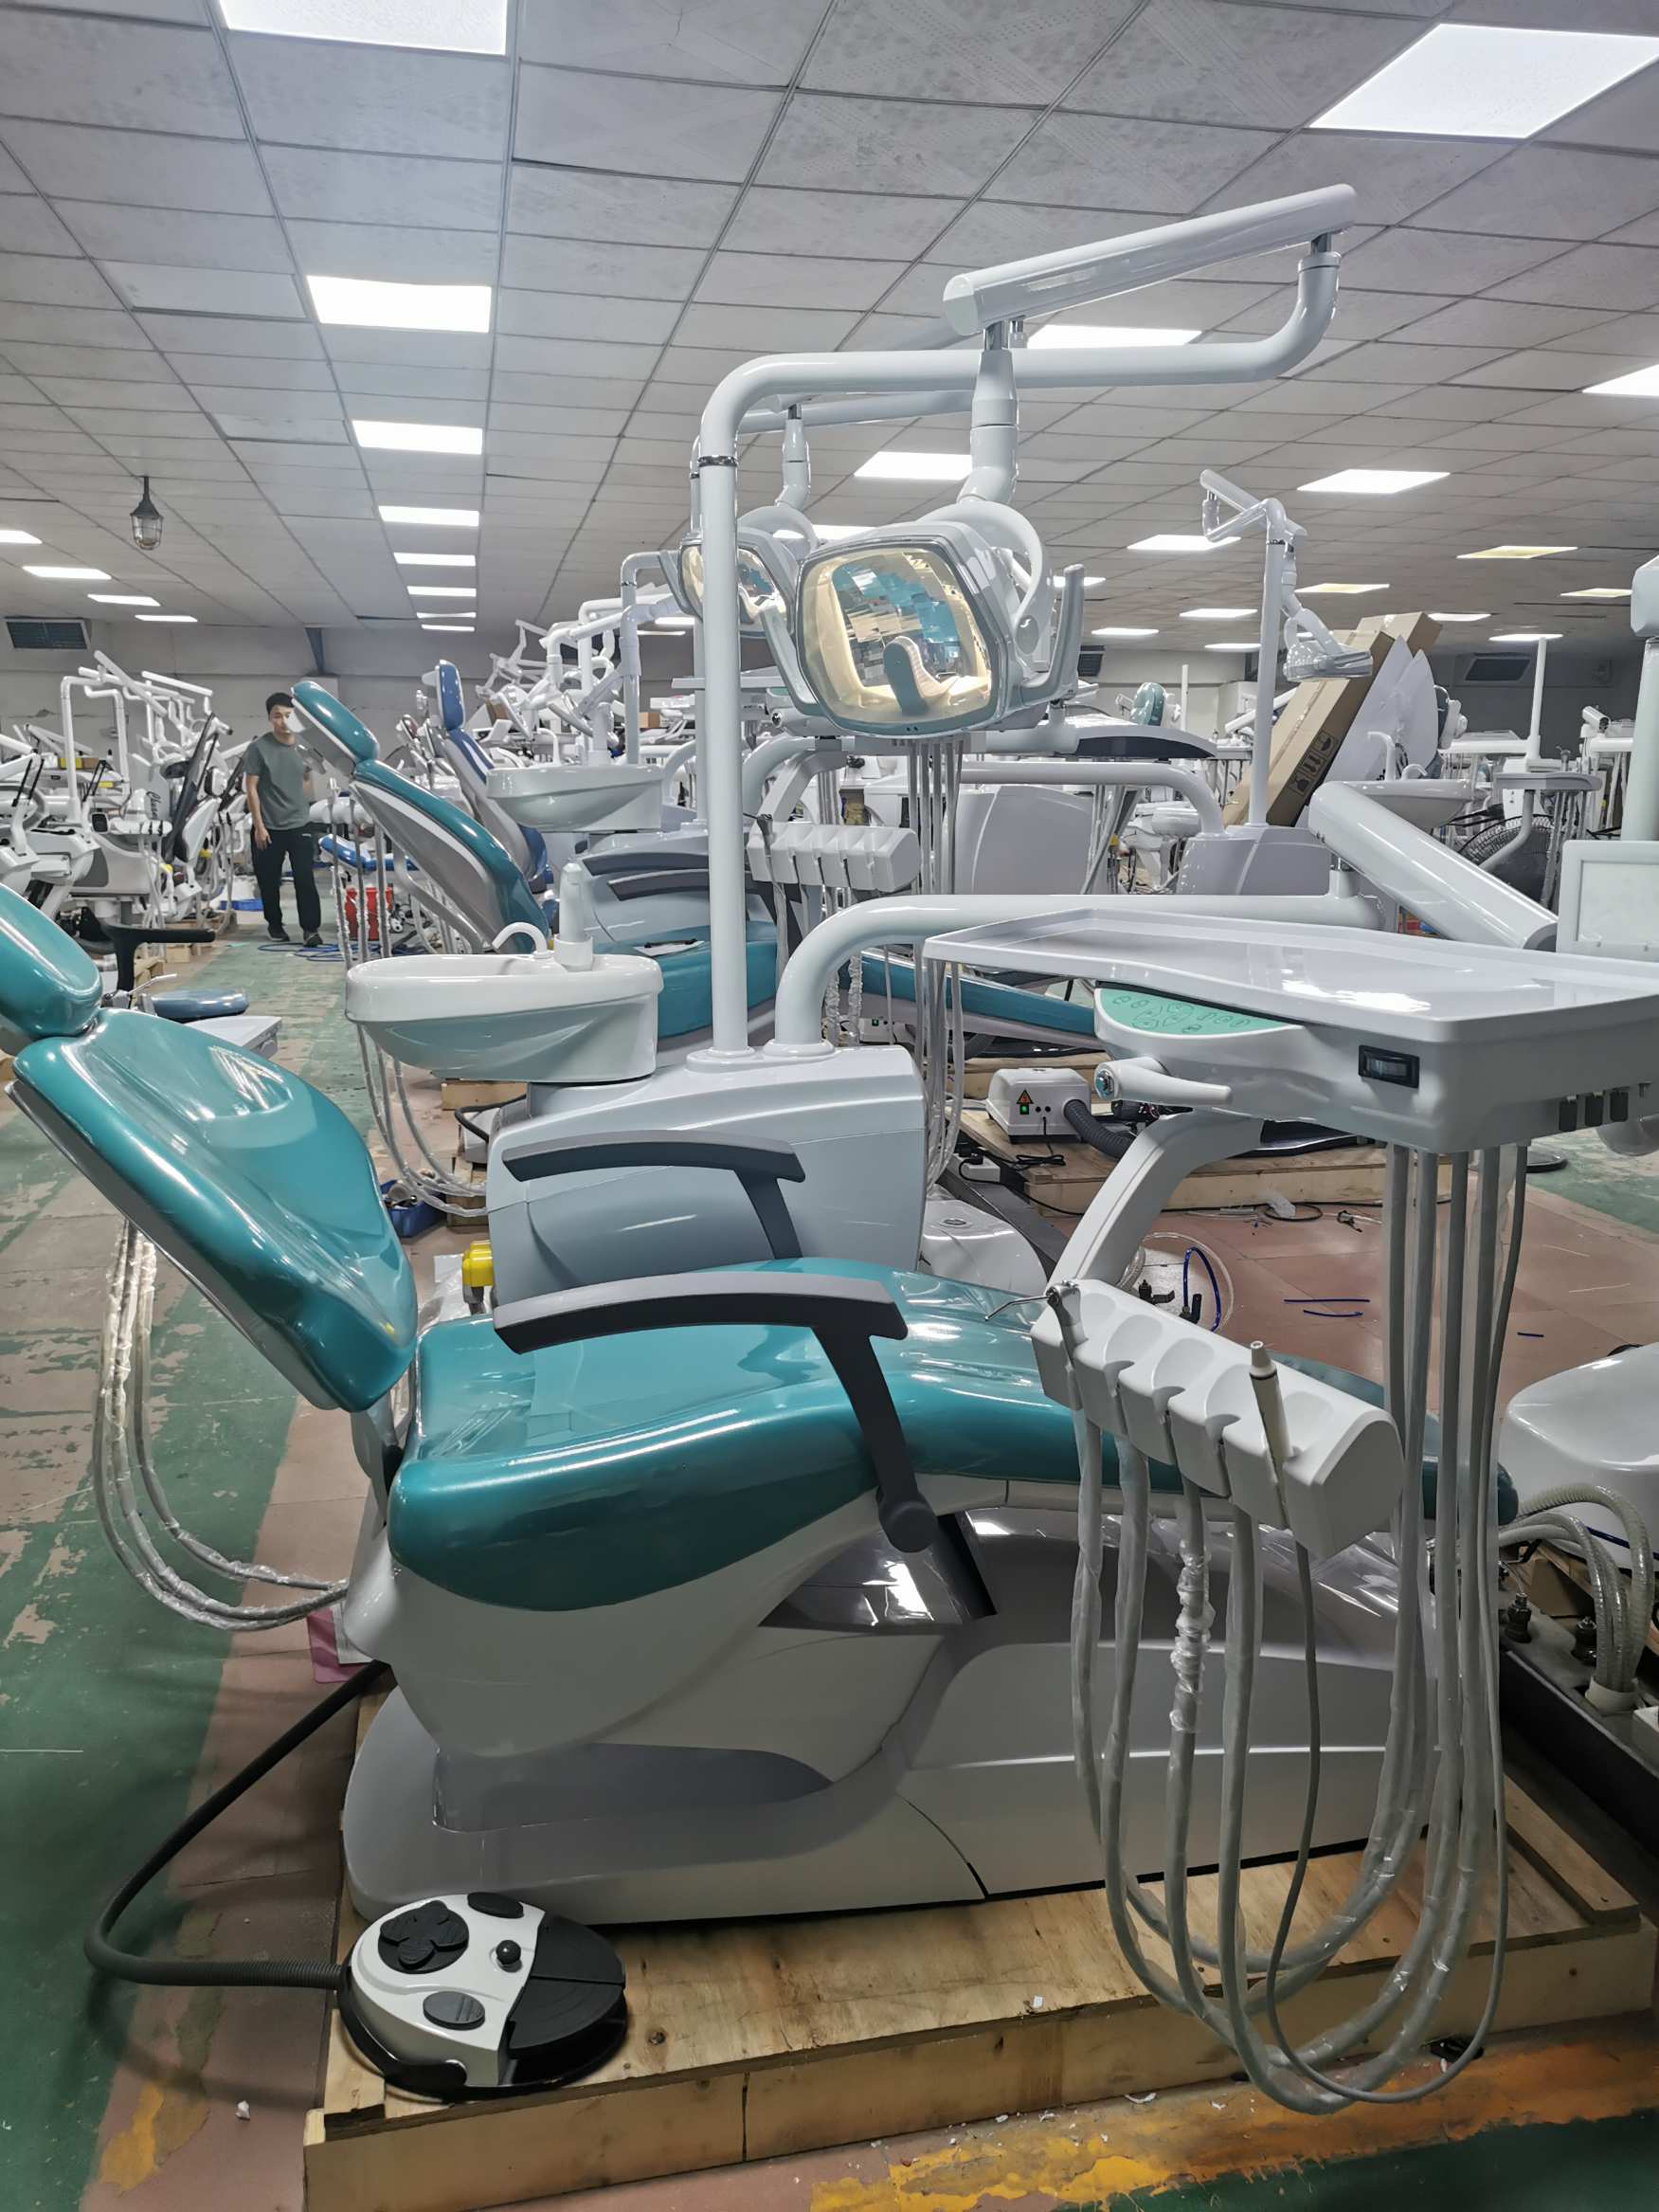 cx dental chair unit